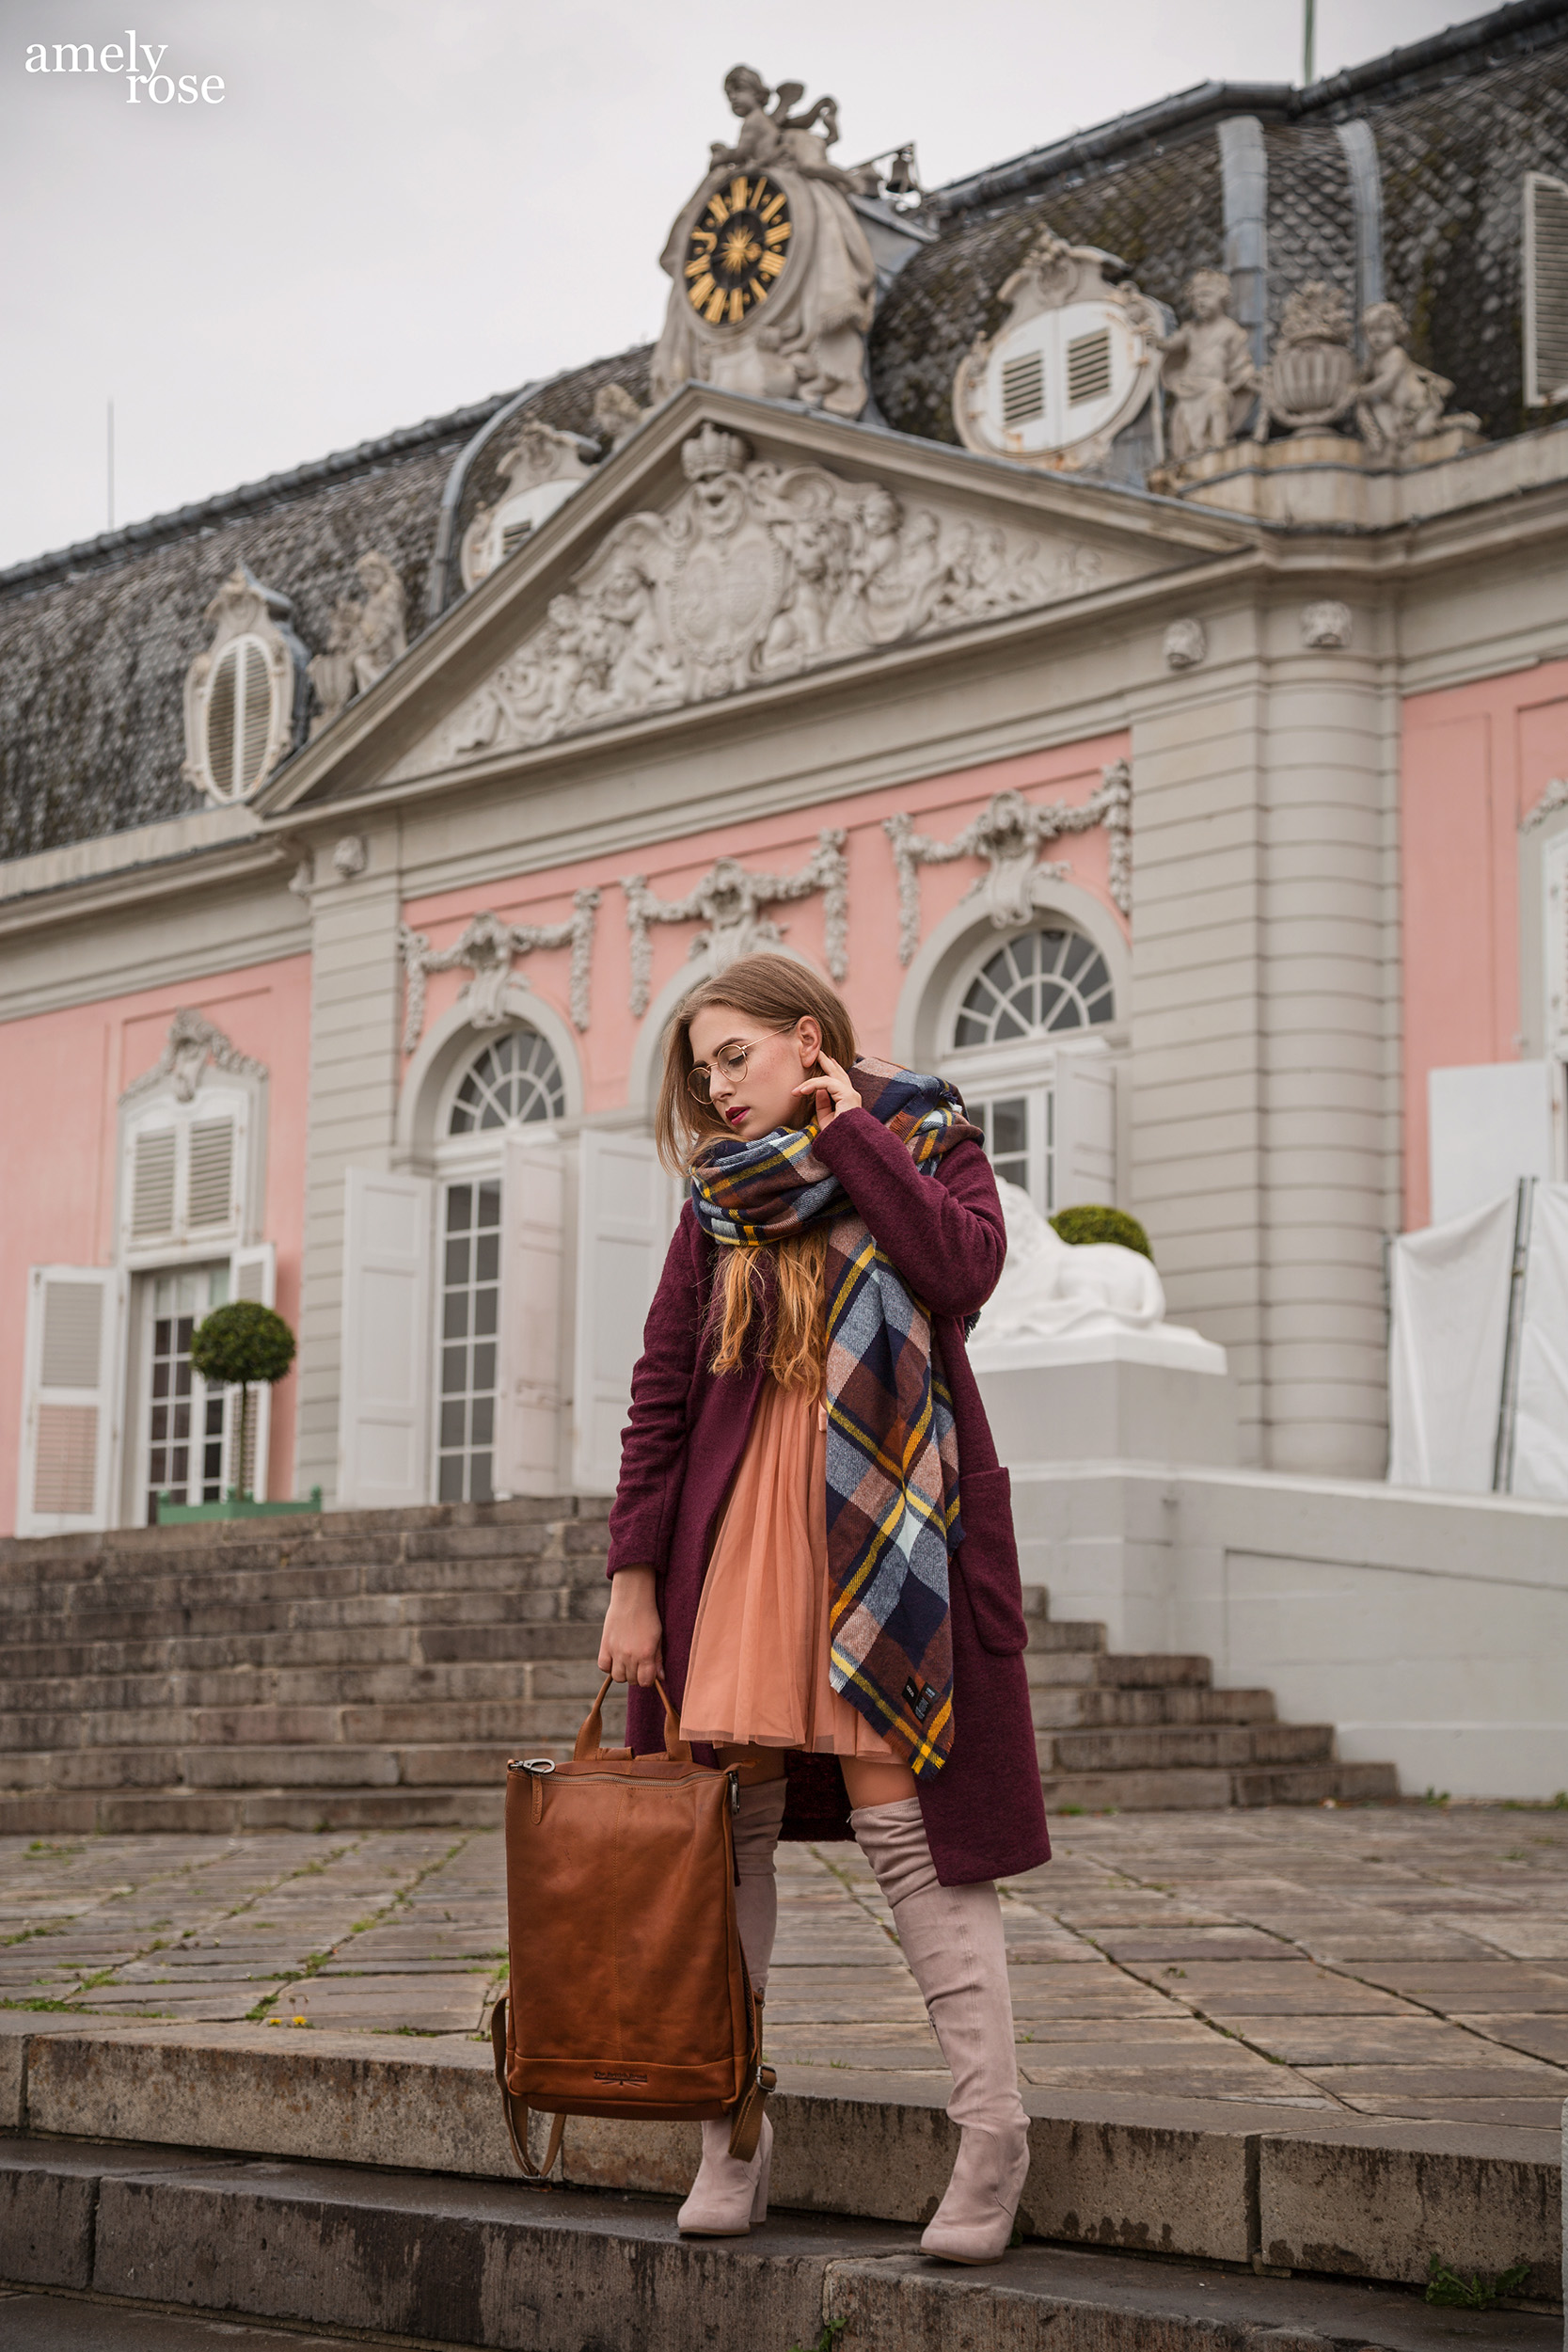 Amely Rose zählt zu den erfolgreisten deutschen fashionblogger. Sie zeigt einen herbstlook mit erdigentönen einem wollmantel von H&M, sowie einem Zara Kleid, Overkneeboots und einem oversize Schal. Dazu ein schöner lederrucksack kombiniert.